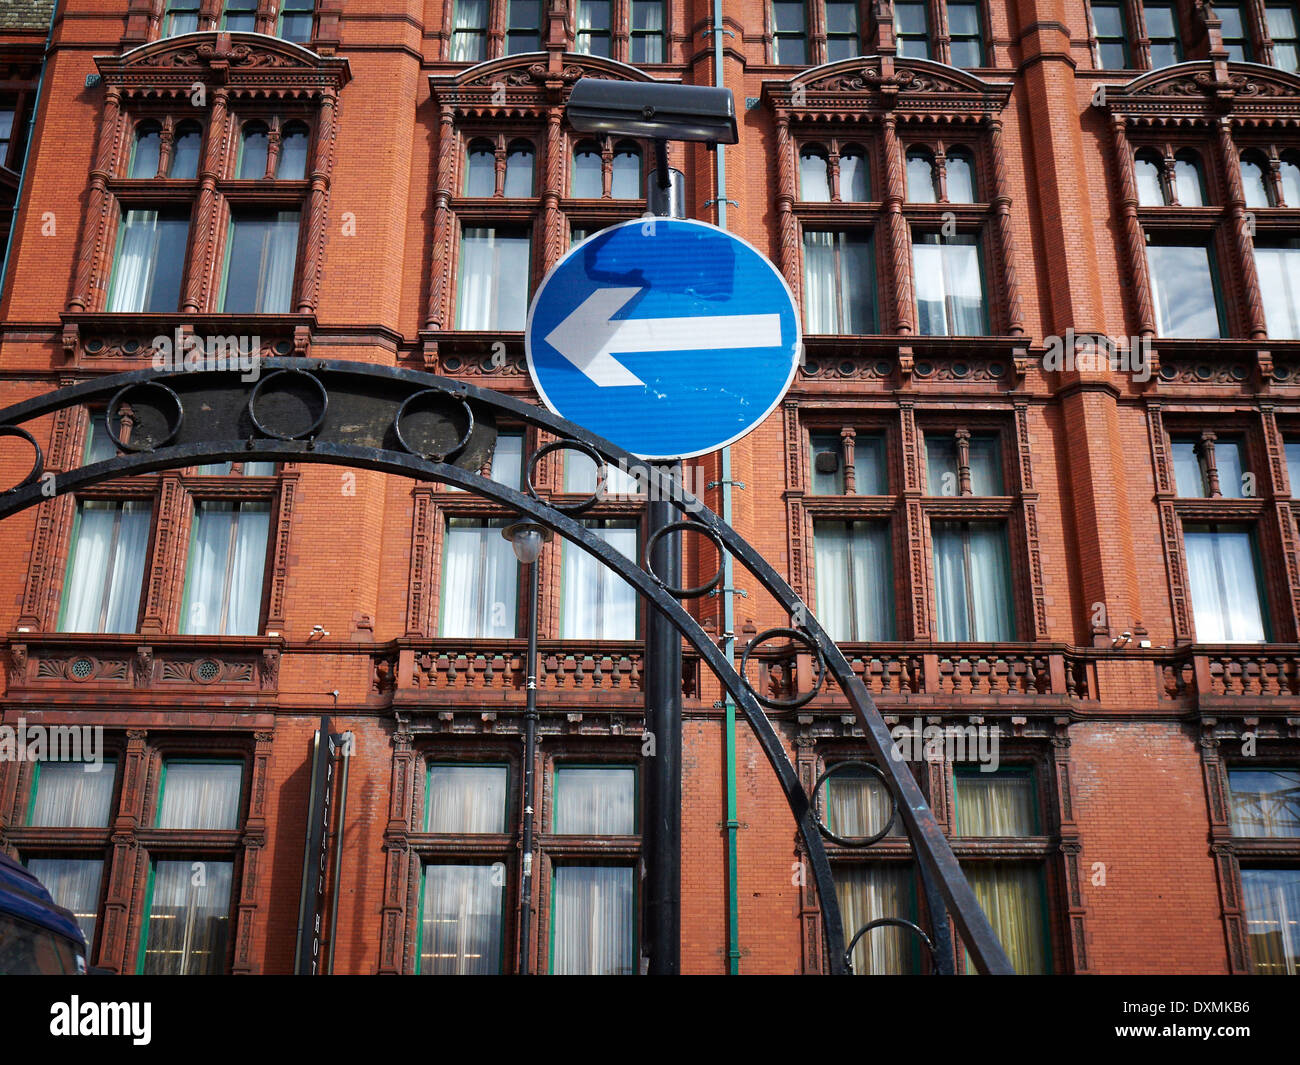 Girare a sinistra in segno di traffico nella parte anteriore del Palace hotel a Manchester REGNO UNITO Foto Stock